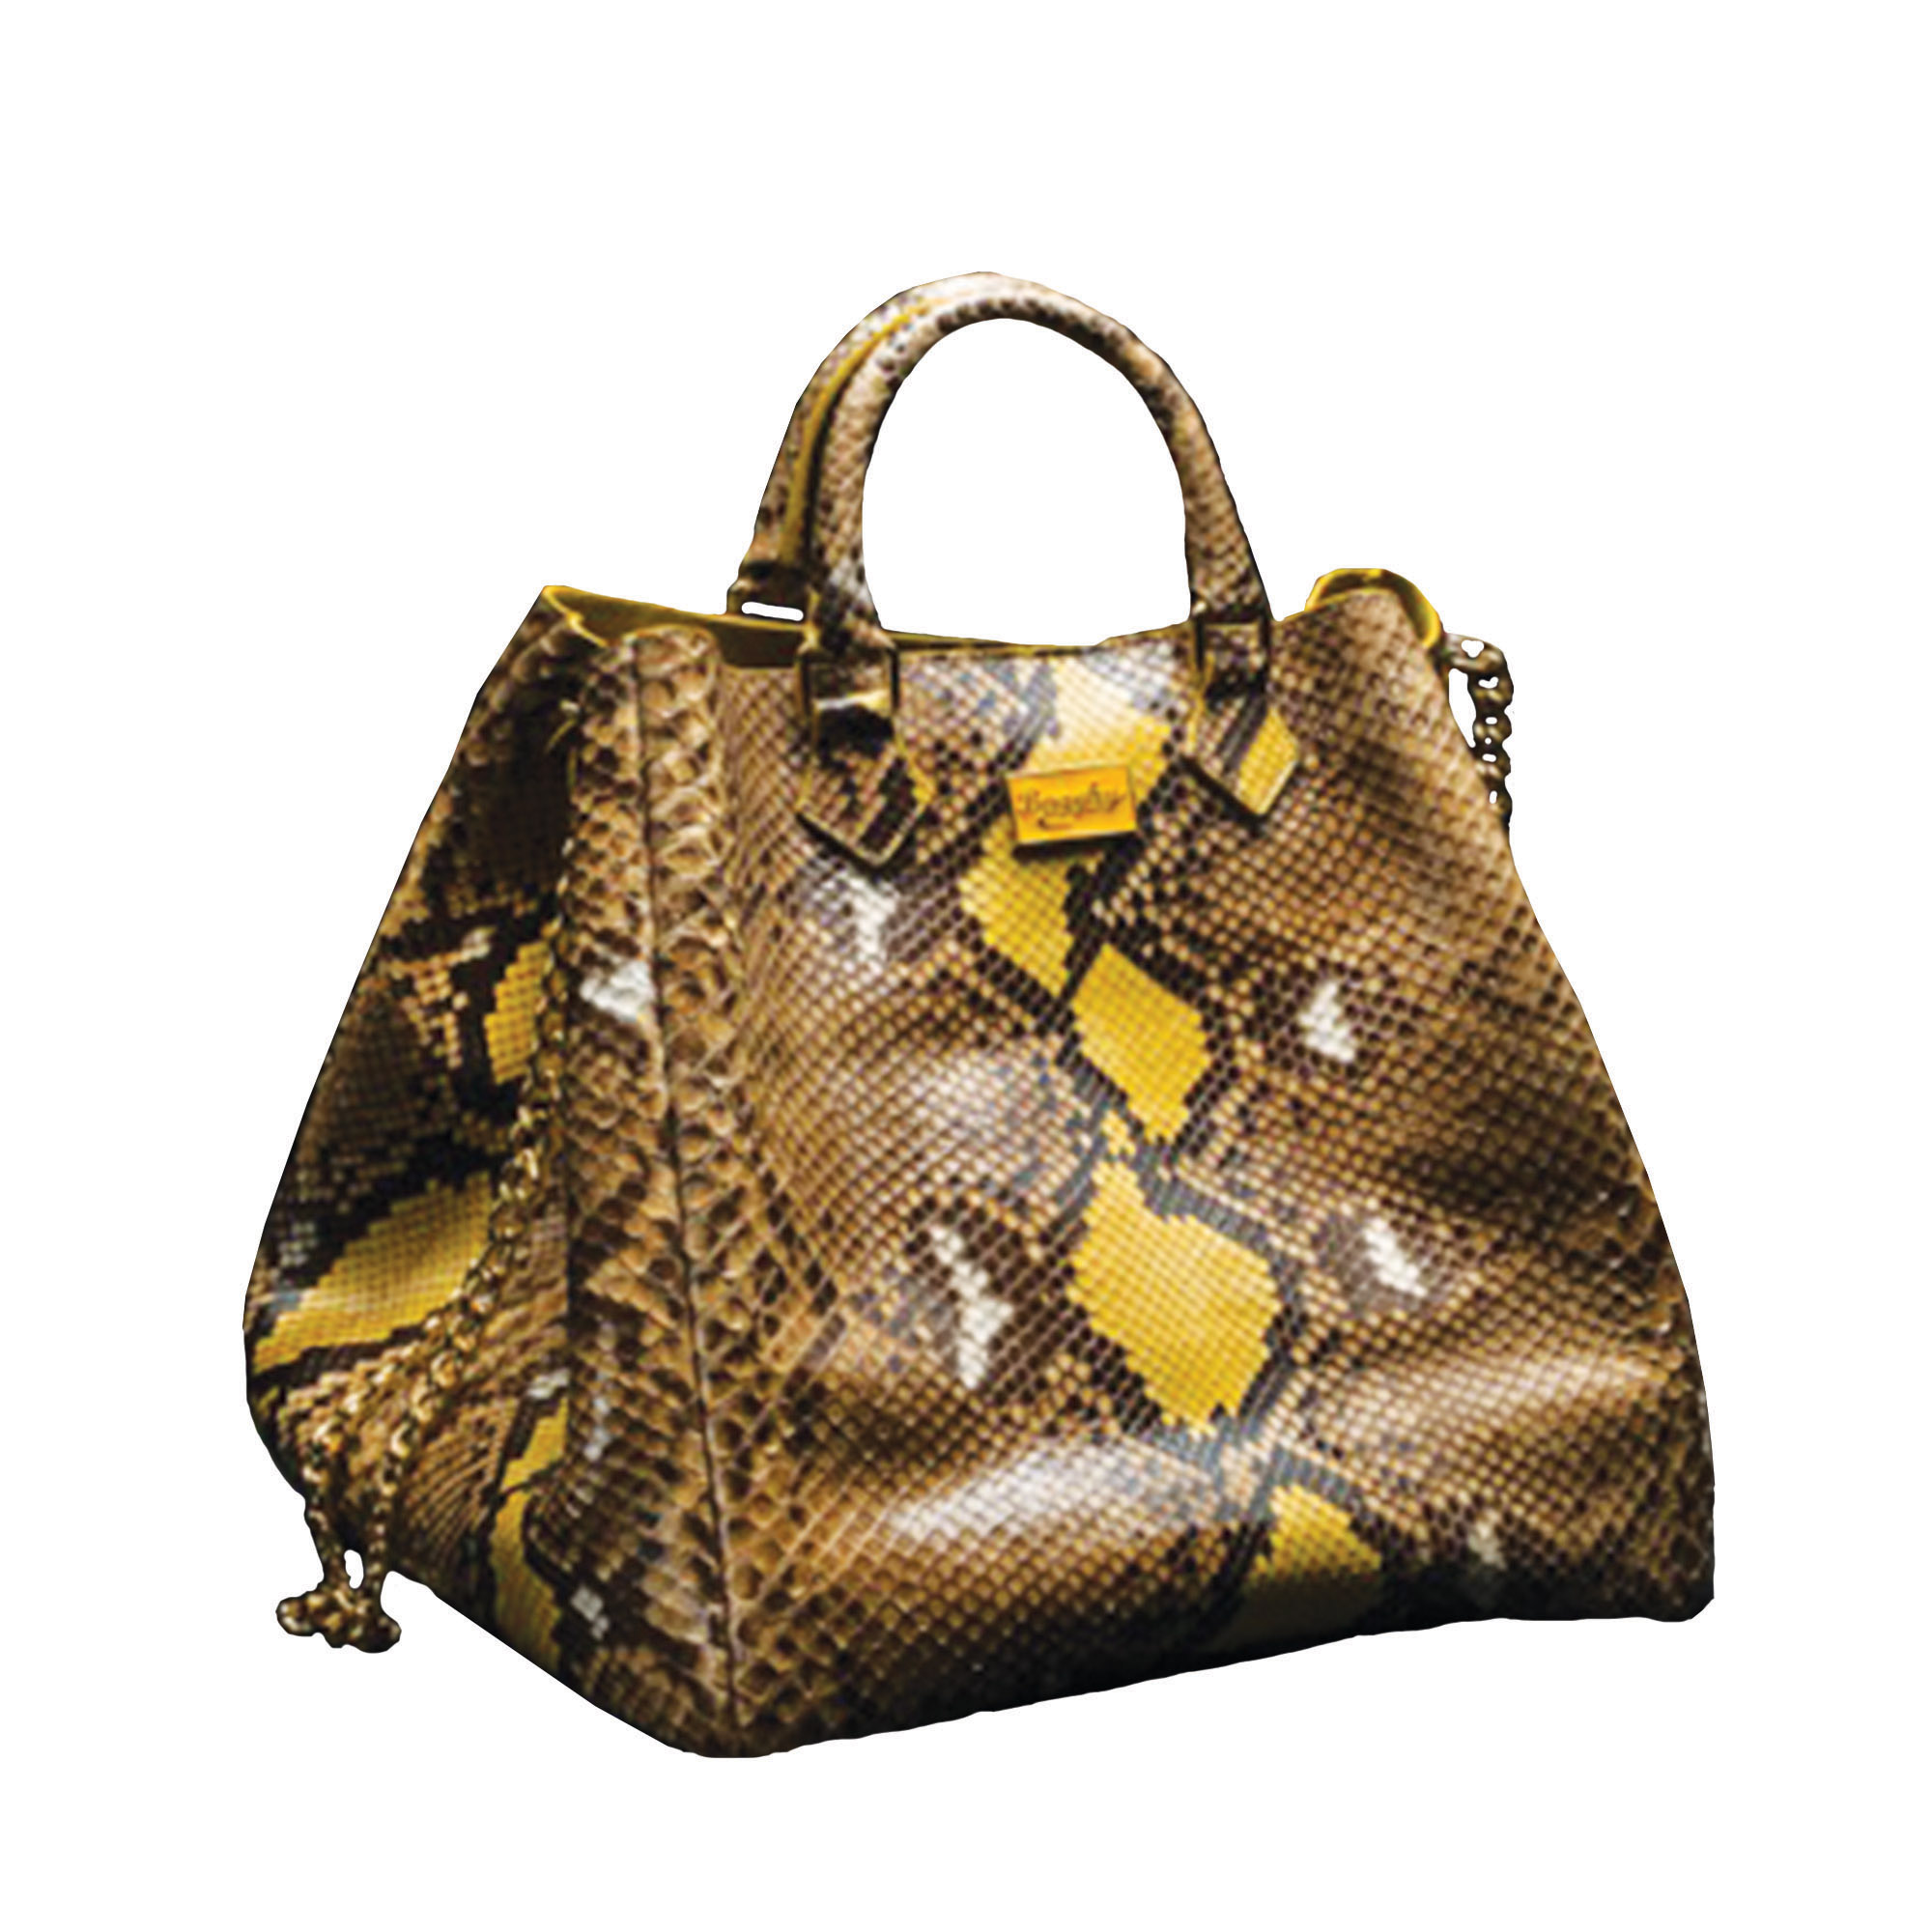 CLN - Golden hour goodness. ✨ Shop the Nataly Shoulder Bag for